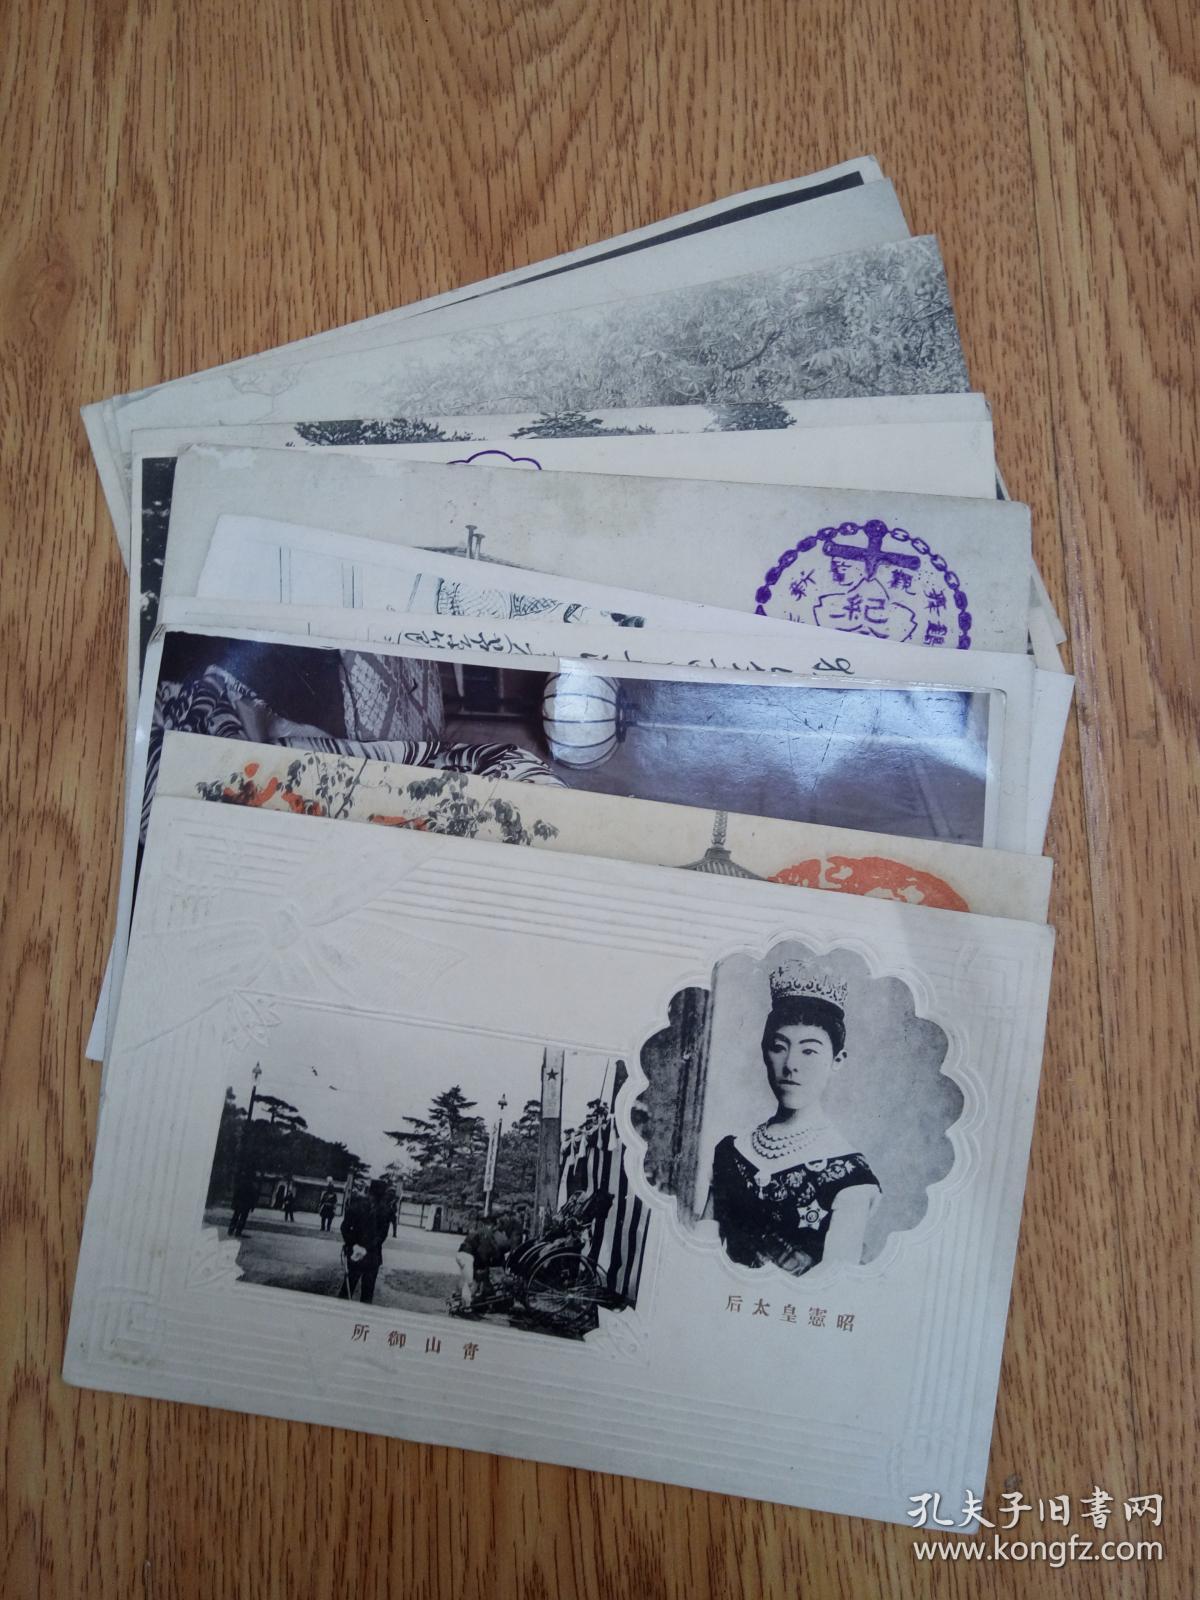 民国日本发行明信片12张合售:昭宪皇太后、福